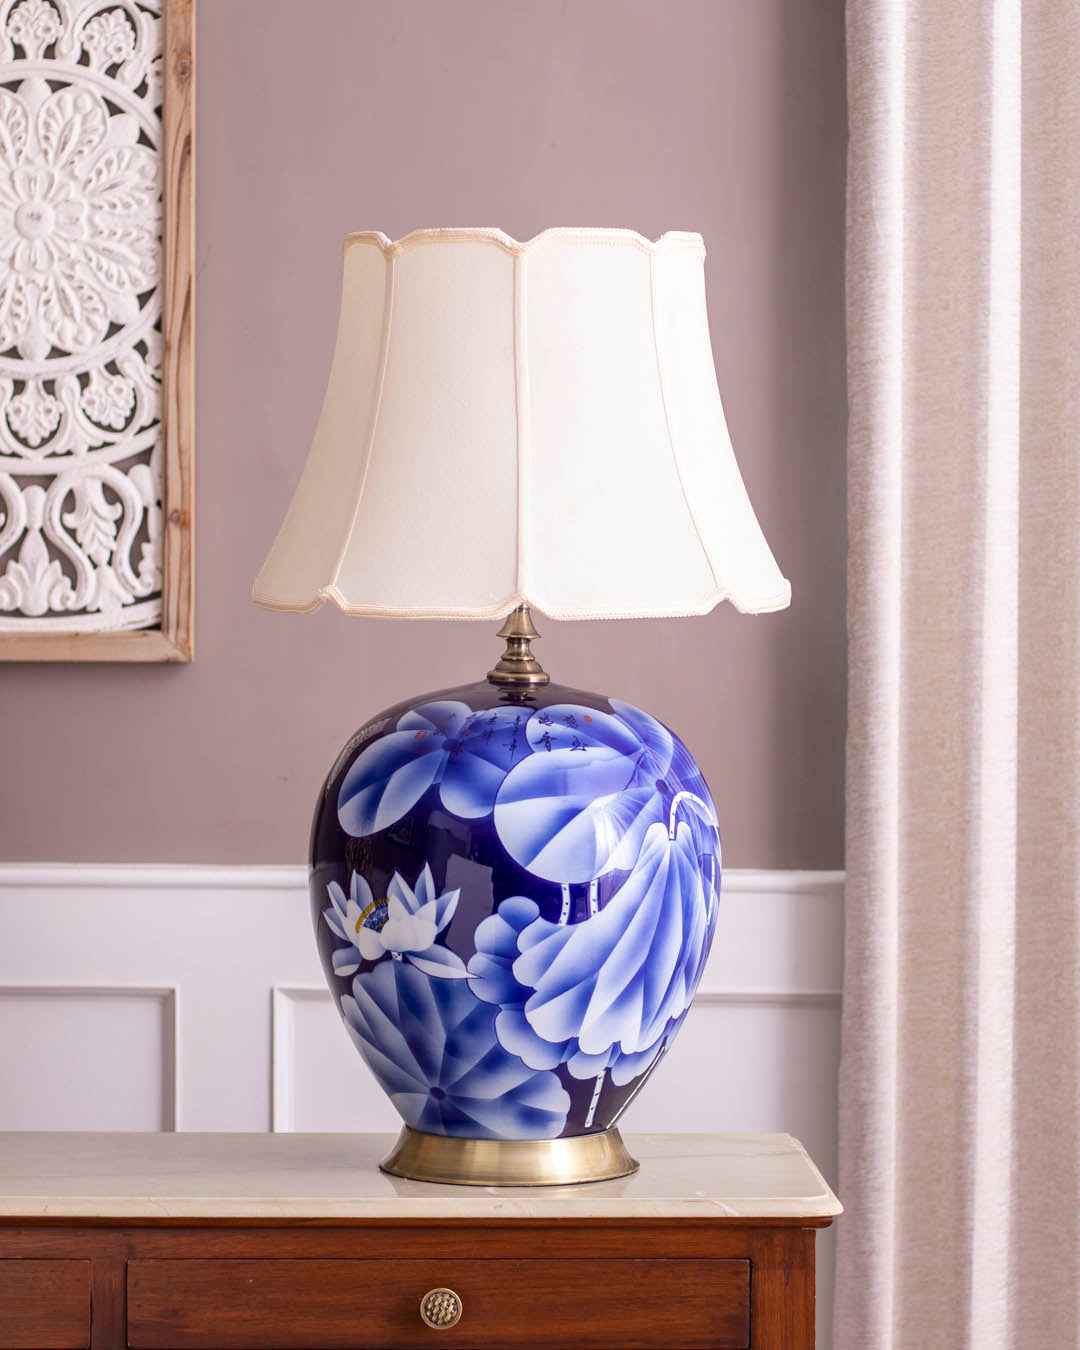 The Lotus Ceramic Table Lamp